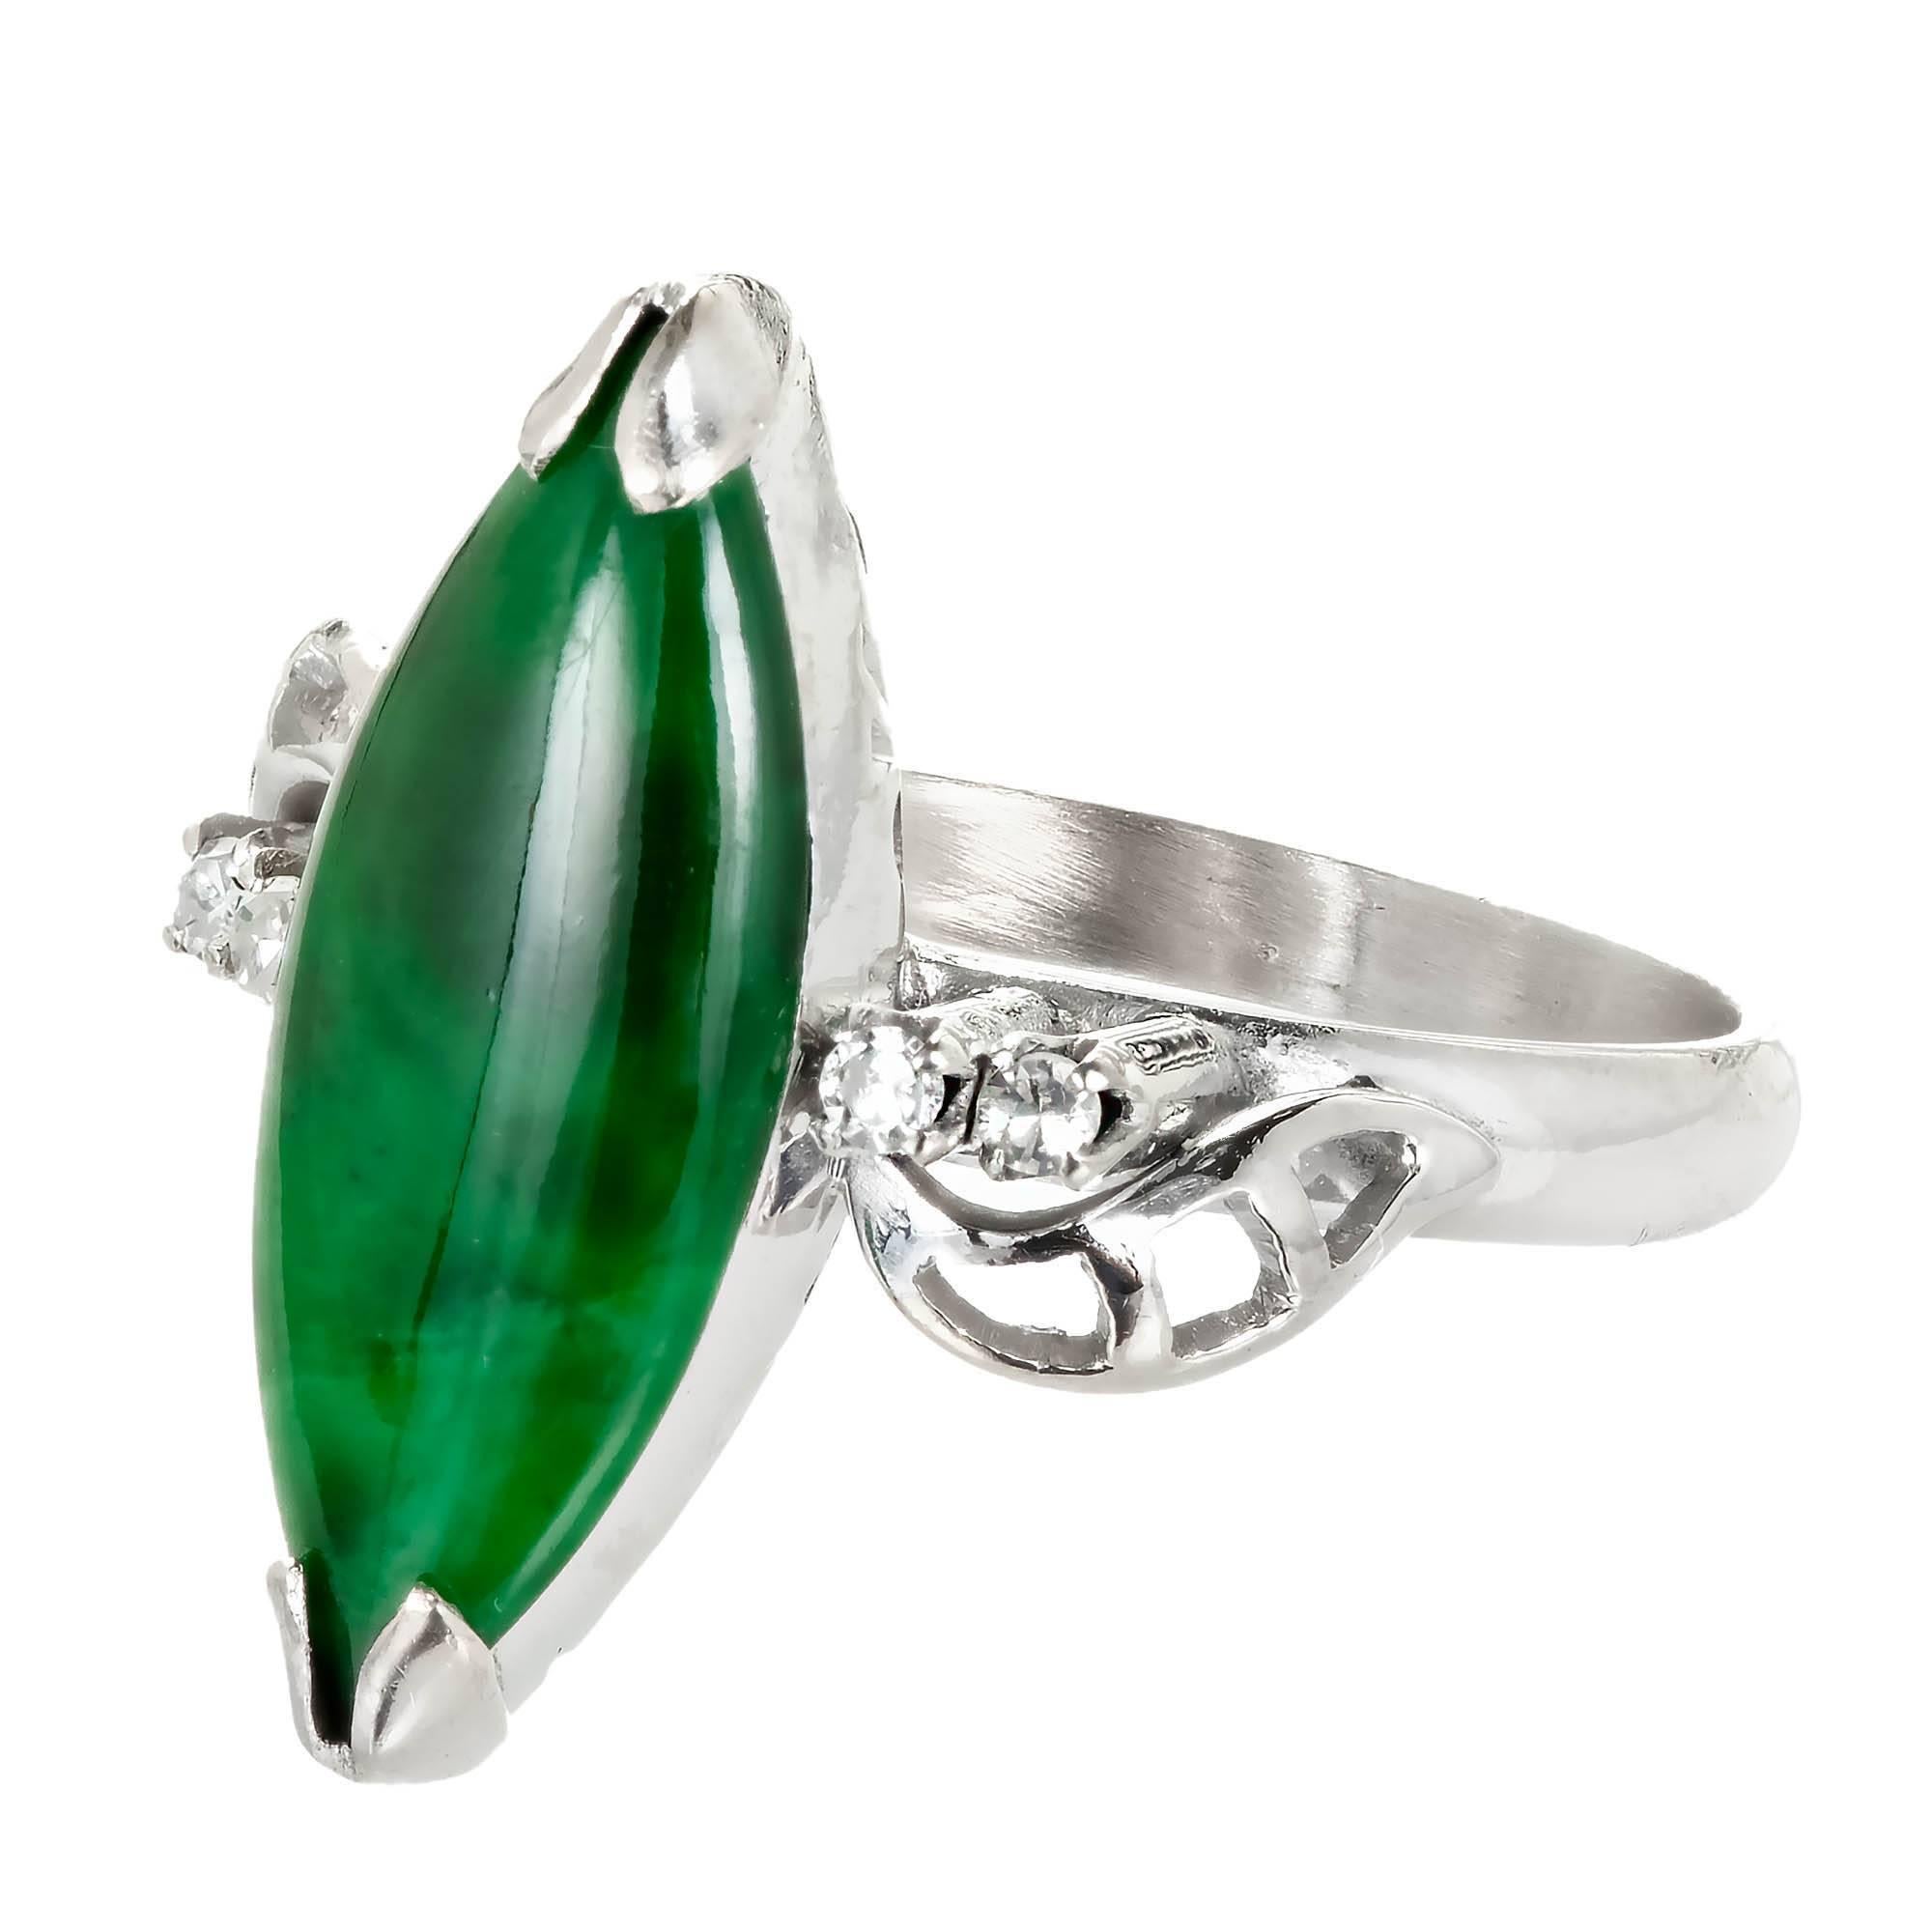 1960's Mitte des Jahrhunderts Marquise hellgrün Jadeit Jade und Diamant-Ring. Die Jade hat einen faszinierenden grünen Farbton, der von 4 Diamanten im Einzelschliff in einer Fassung aus 14 Karat Weißgold akzentuiert wird. Vom GIA als natürlich und